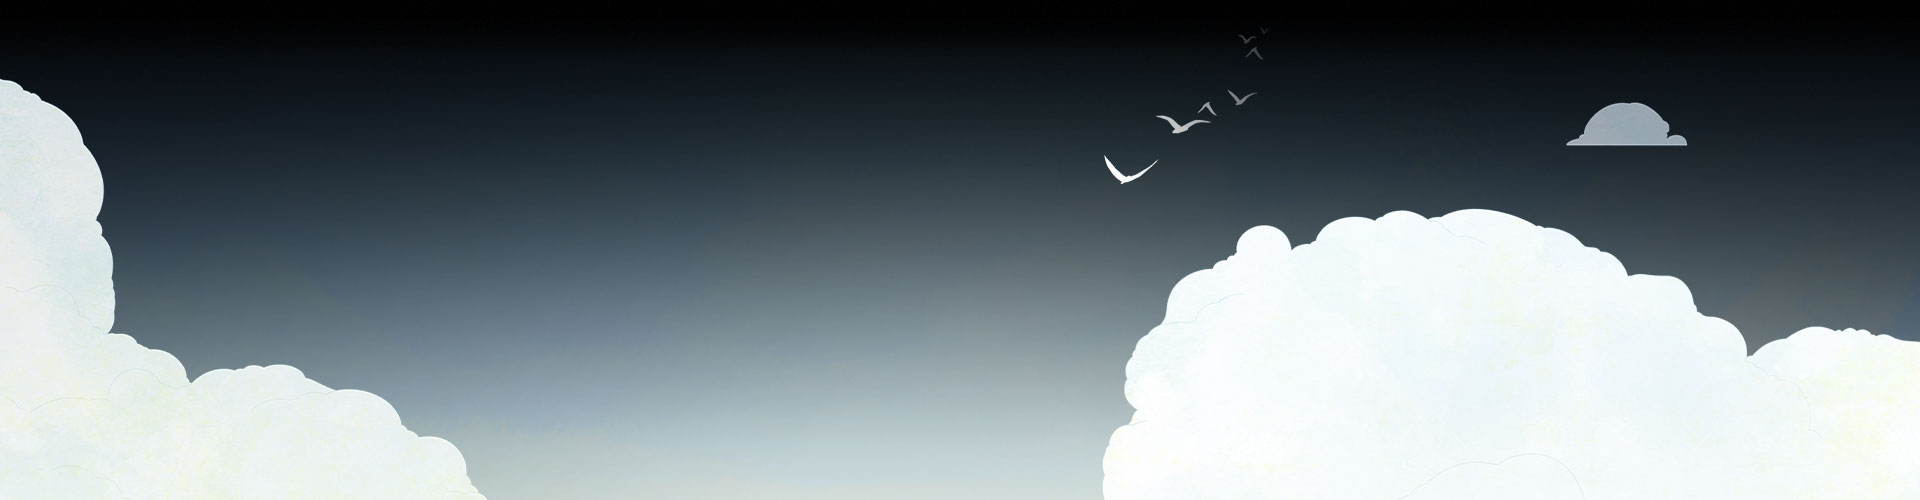 Hintergrund mit Wolken und wegfliegenden Vögeln